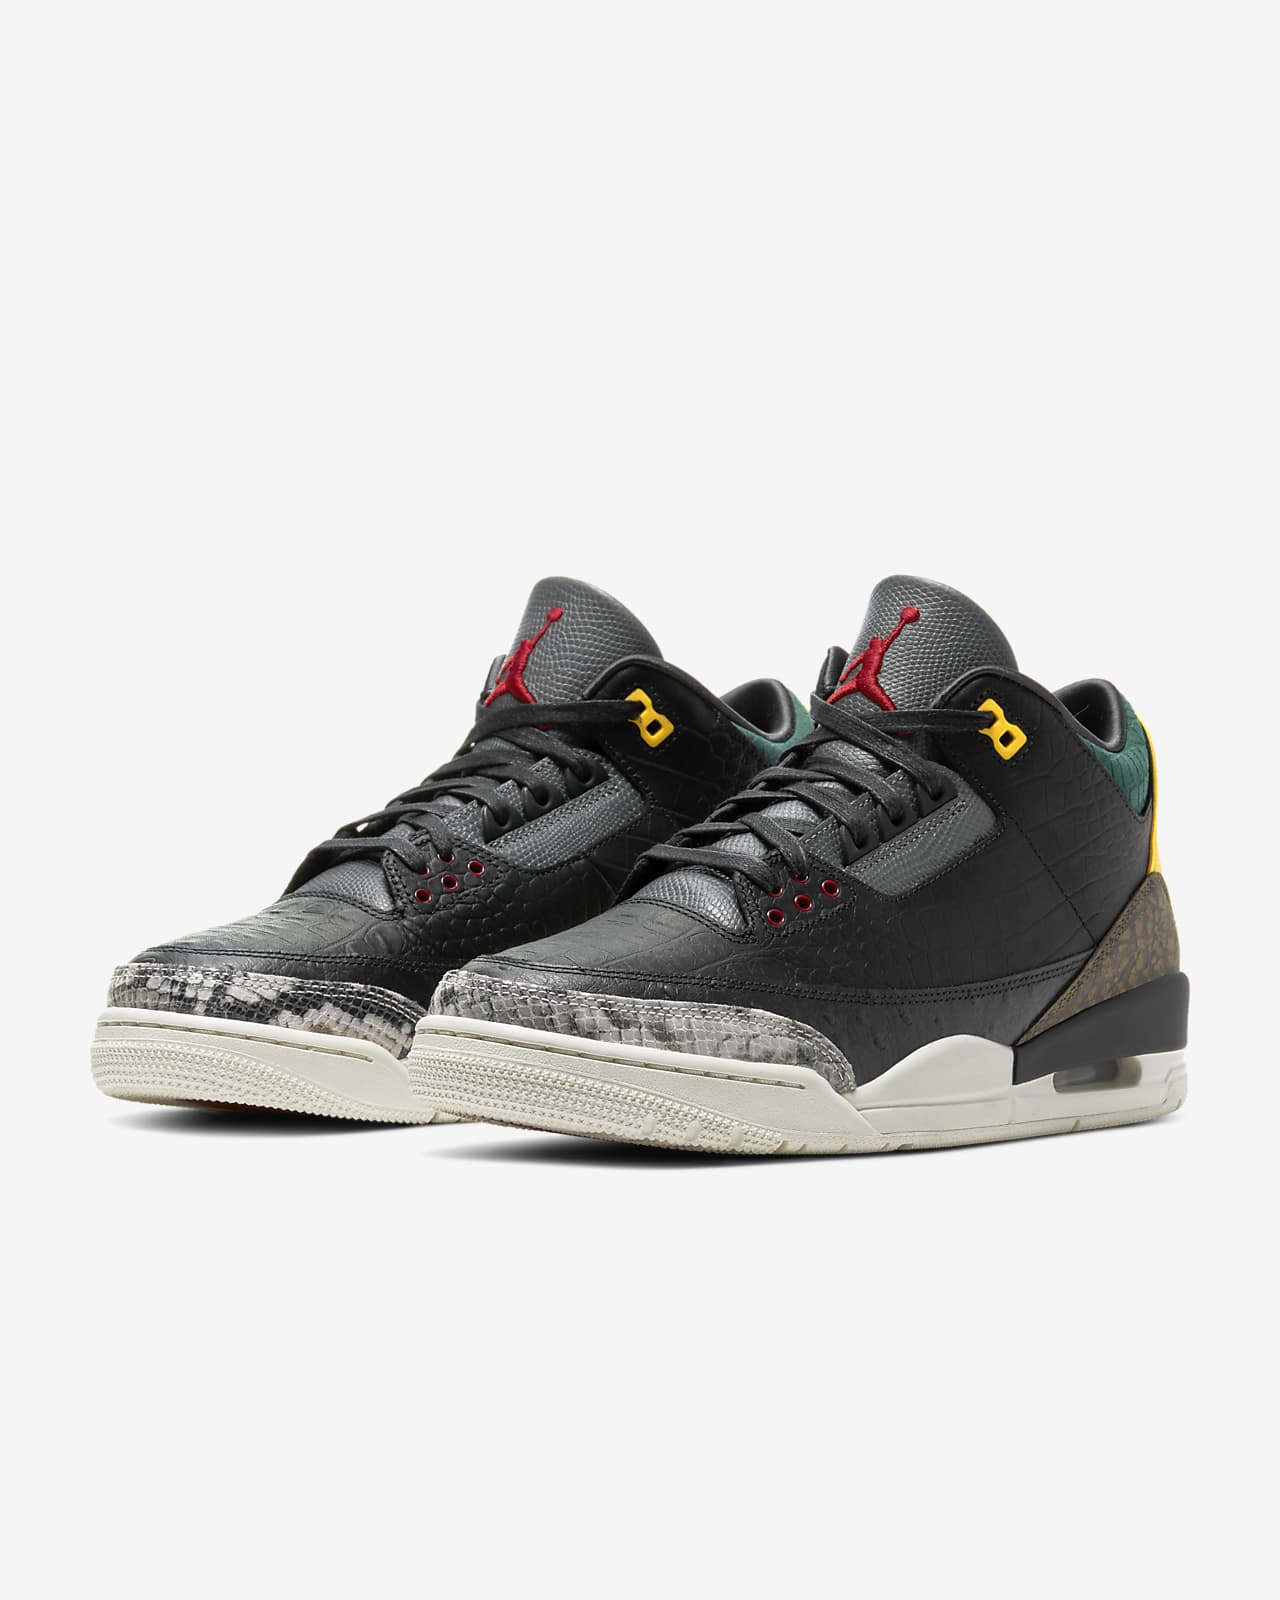 Air Jordan 3 Retro Se Schoen Nike Nl